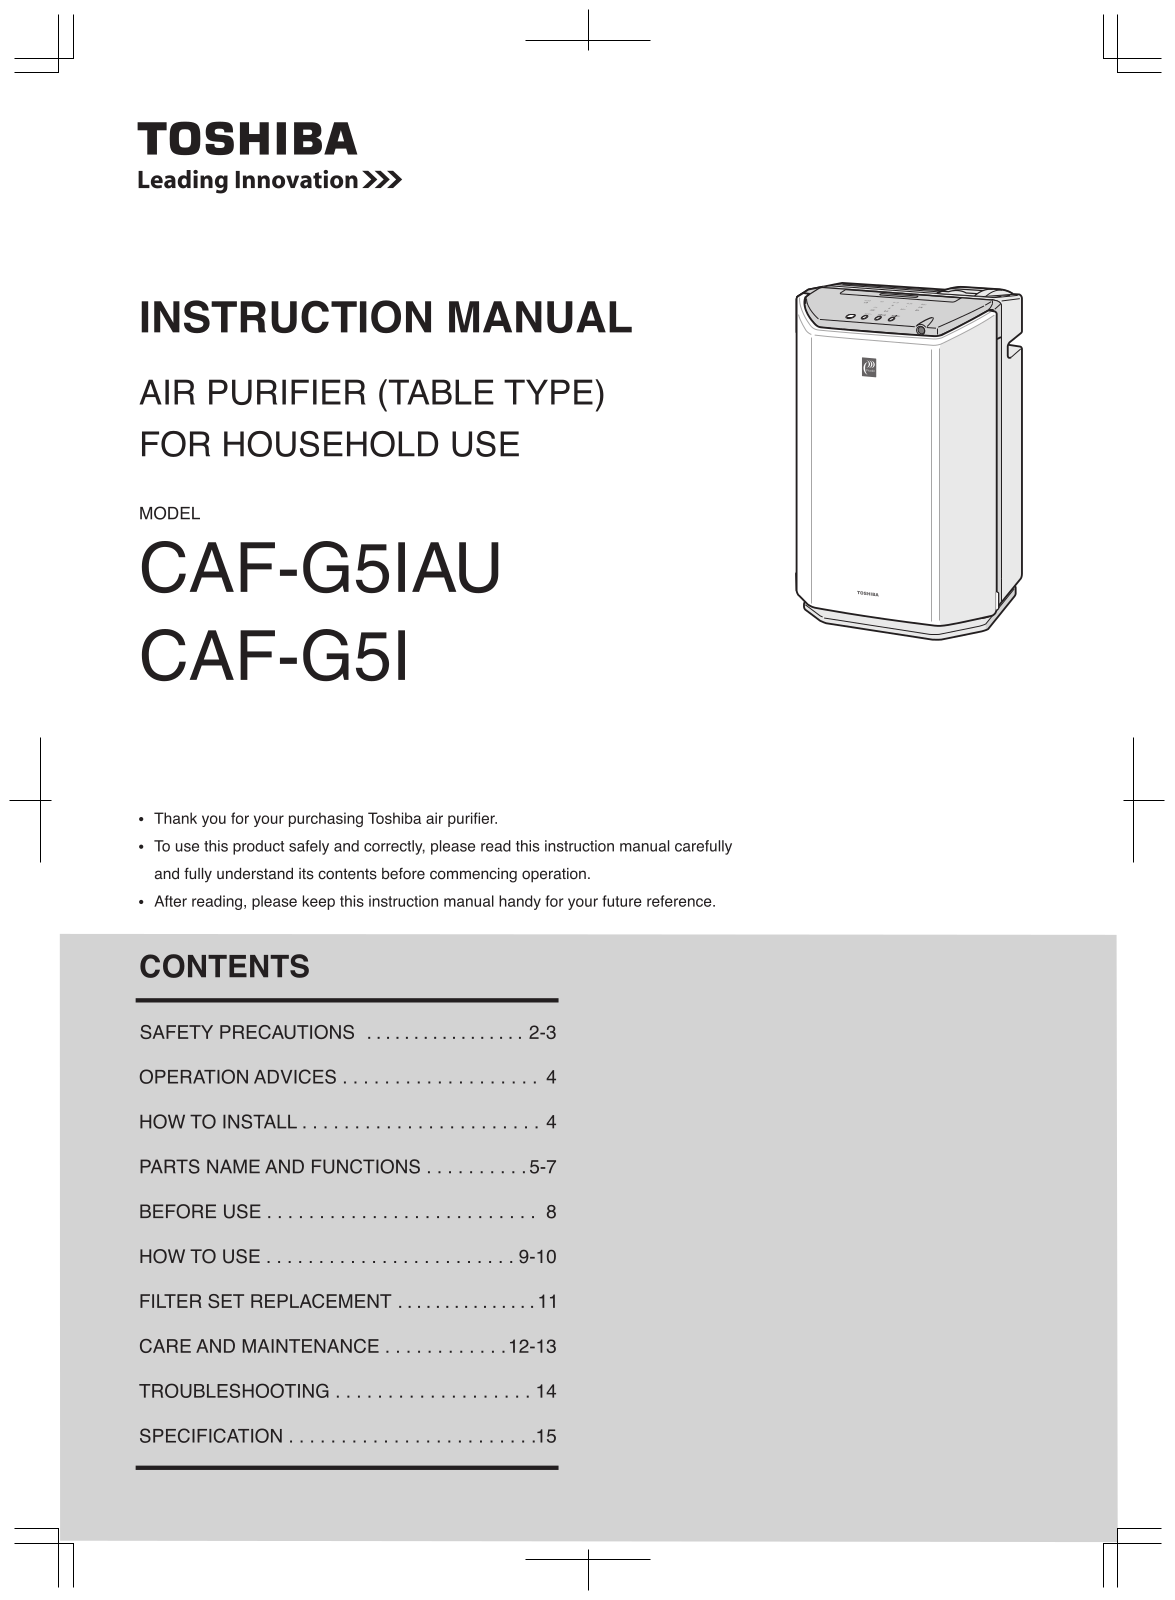 Toshiba CAF-G5IAU, CAF-G5I User Manual